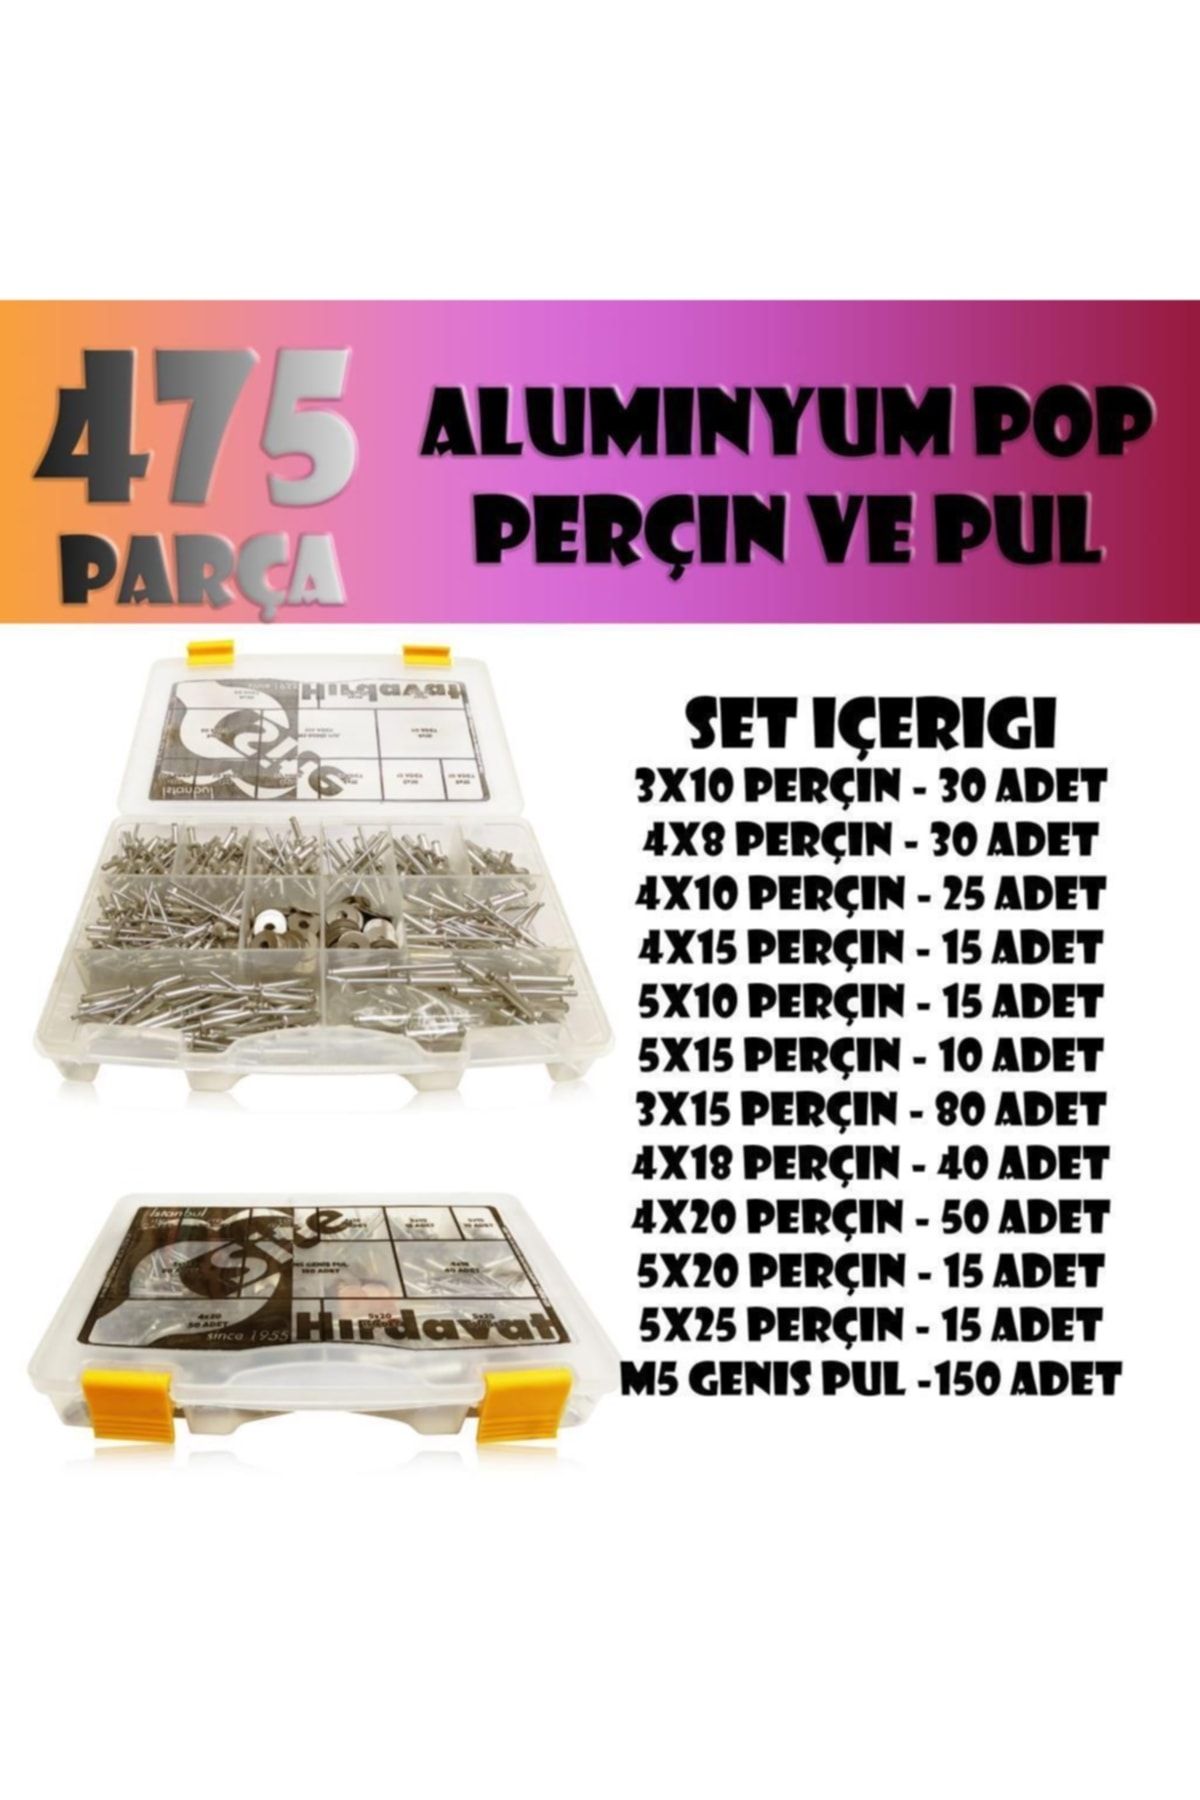 Site Hırdavat 475 Parça Aluminyum Pop Perçin Seti